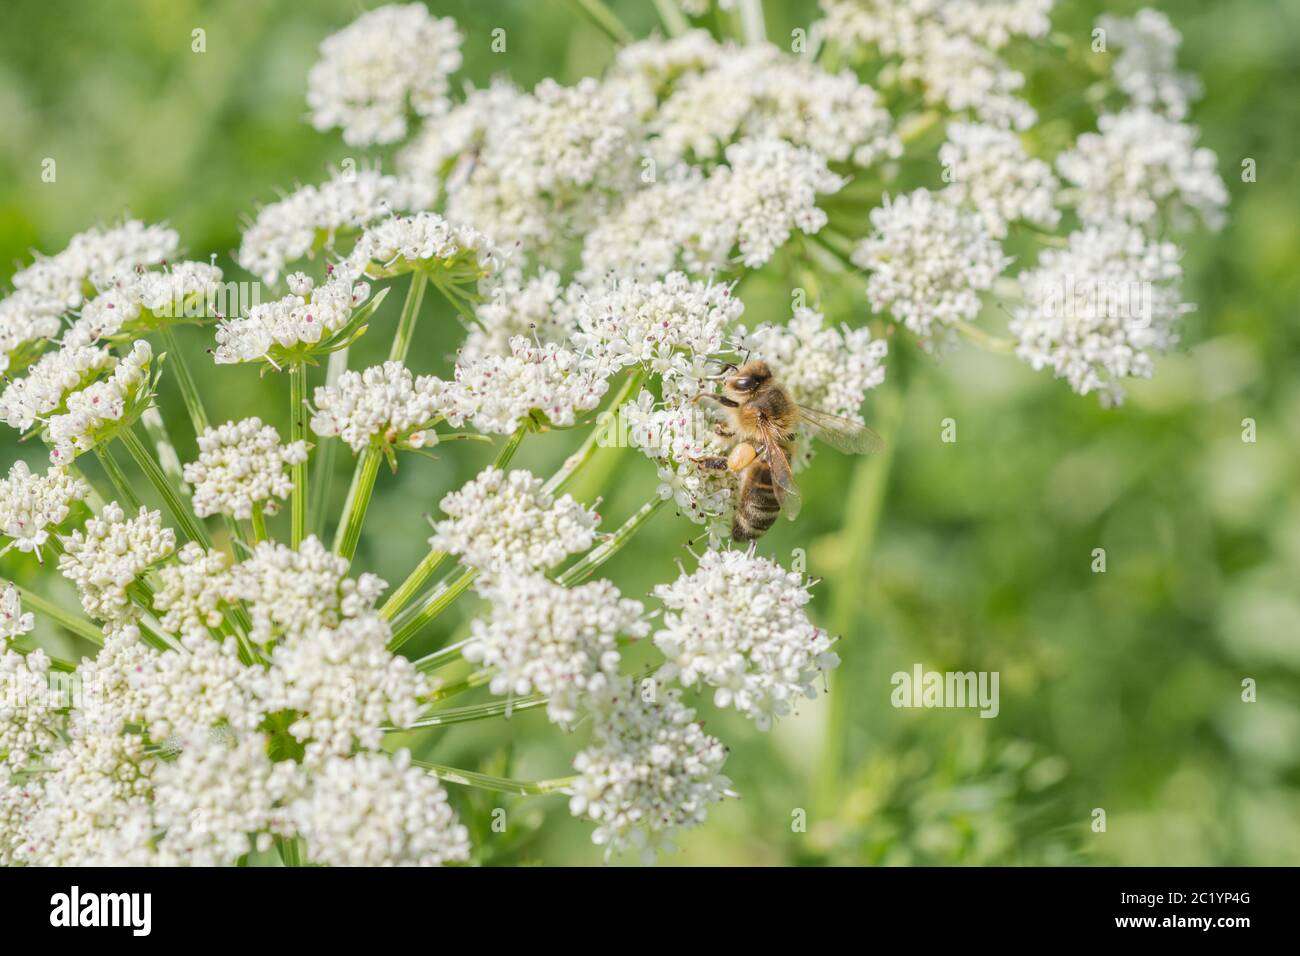 Lavoratore Honeybee / Apis mellifera foraggio e la raccolta di polline tra i fiori di acqua Dropwort / Oenantthe croccata in estate sole. Insetti UK. Foto Stock